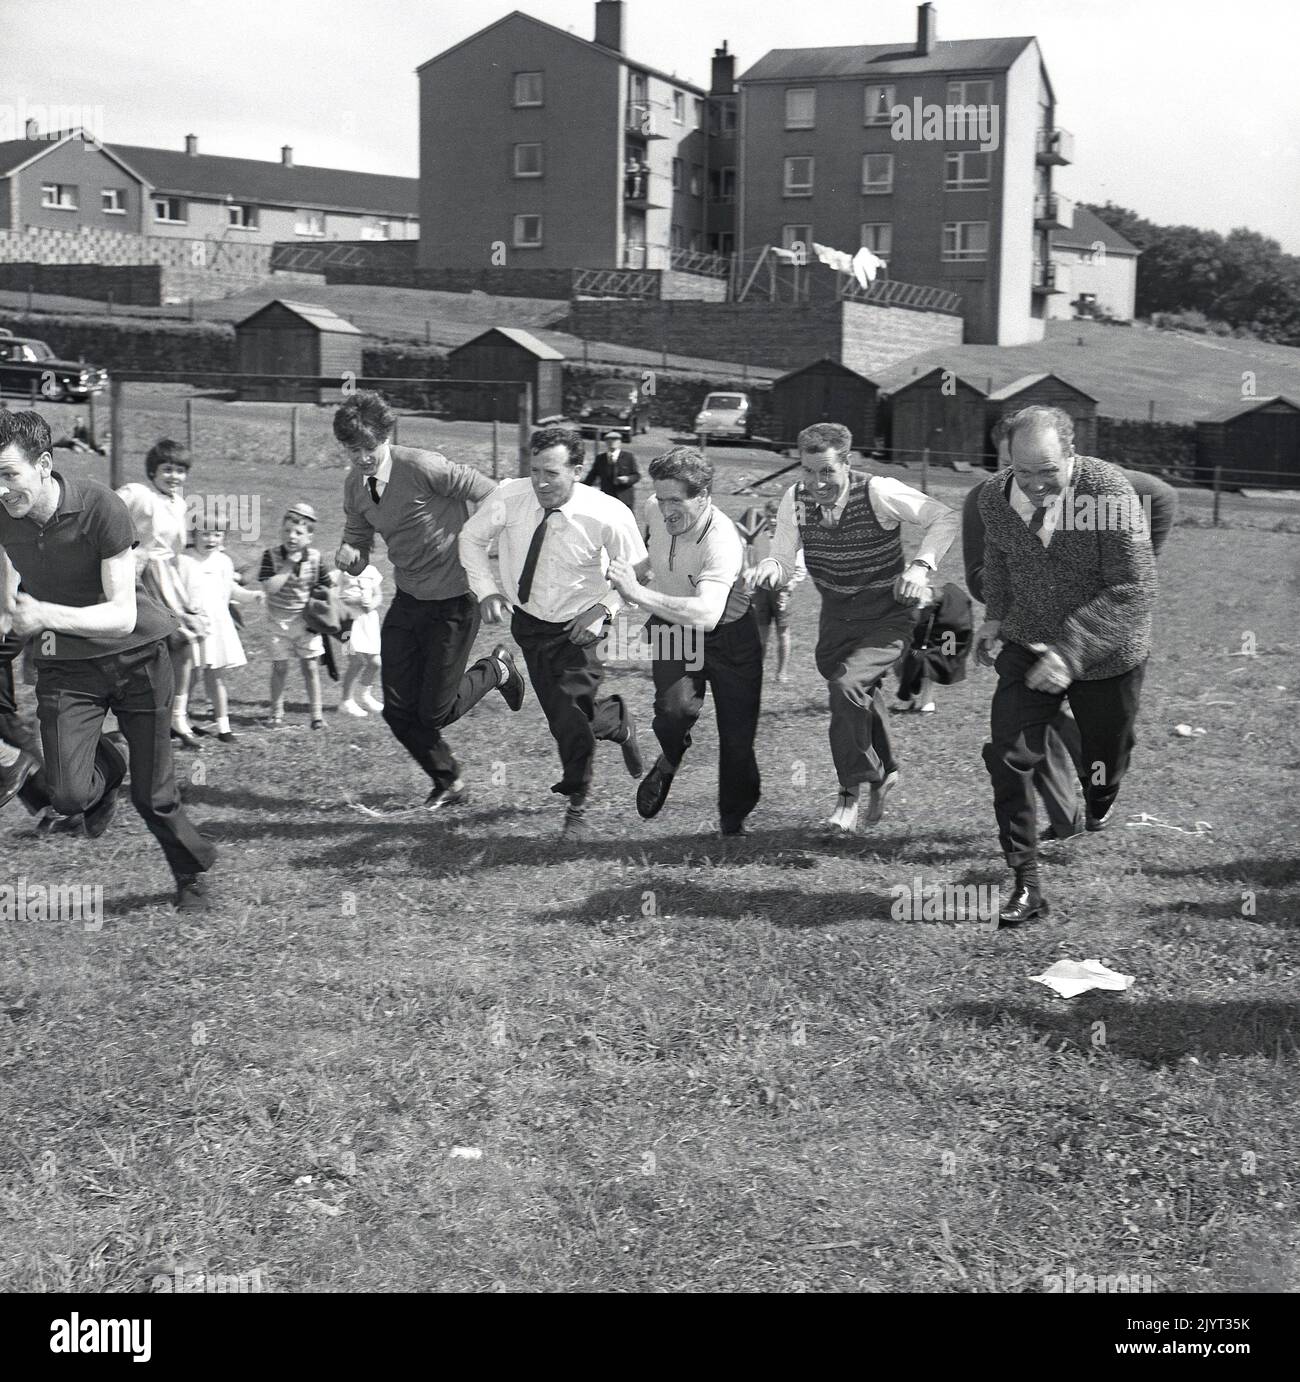 1965, hommes adultes historiques participant à une compétition de course dans un champ dans un domaine d'habitation à North Queensferry, Fife, Écosse, Royaume-Uni, dans le cadre de la journée de gala de North Queensferry, une journée d'activités communautaires pour les résidents. Banque D'Images